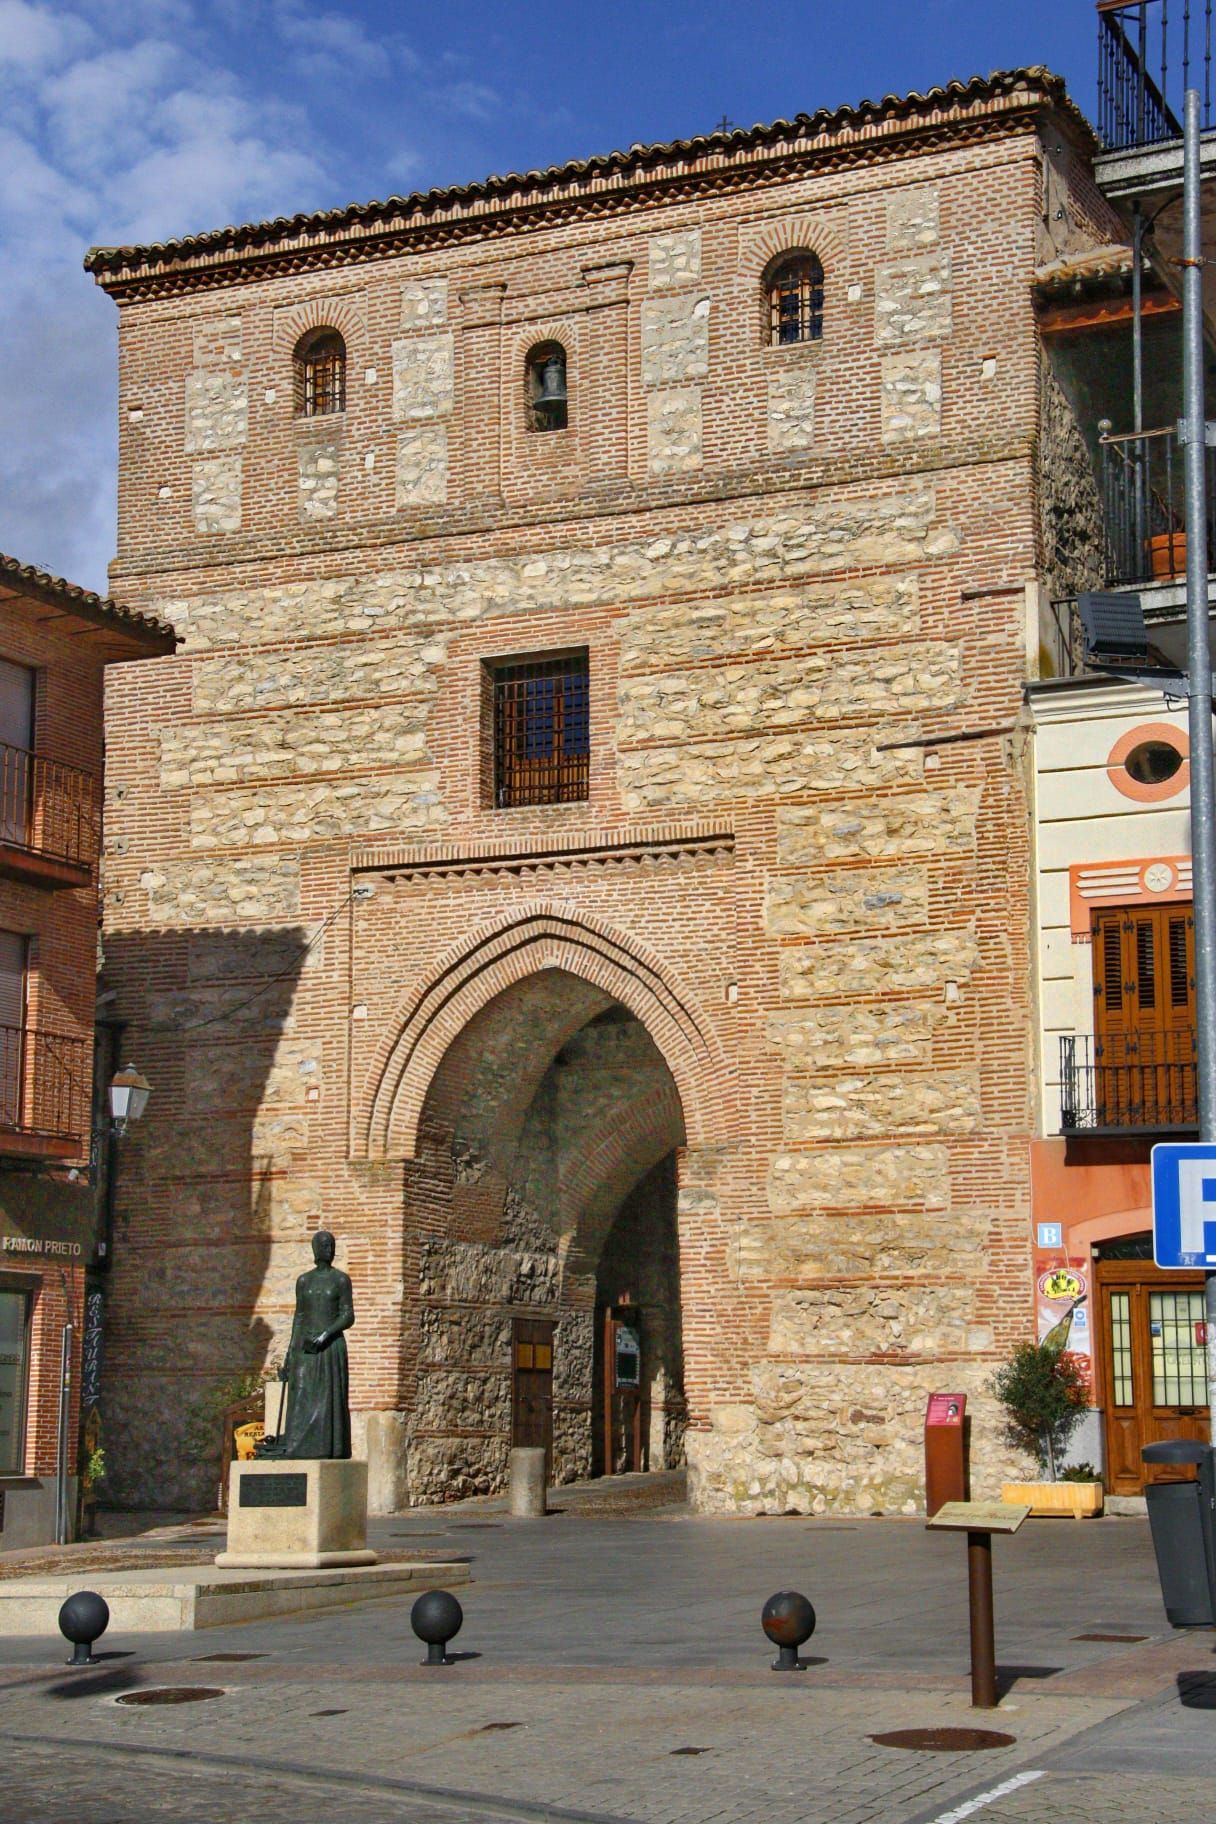 El imponente Arco del Alcocer y la estatua que conmemora a la reina Isabel I de Castilla